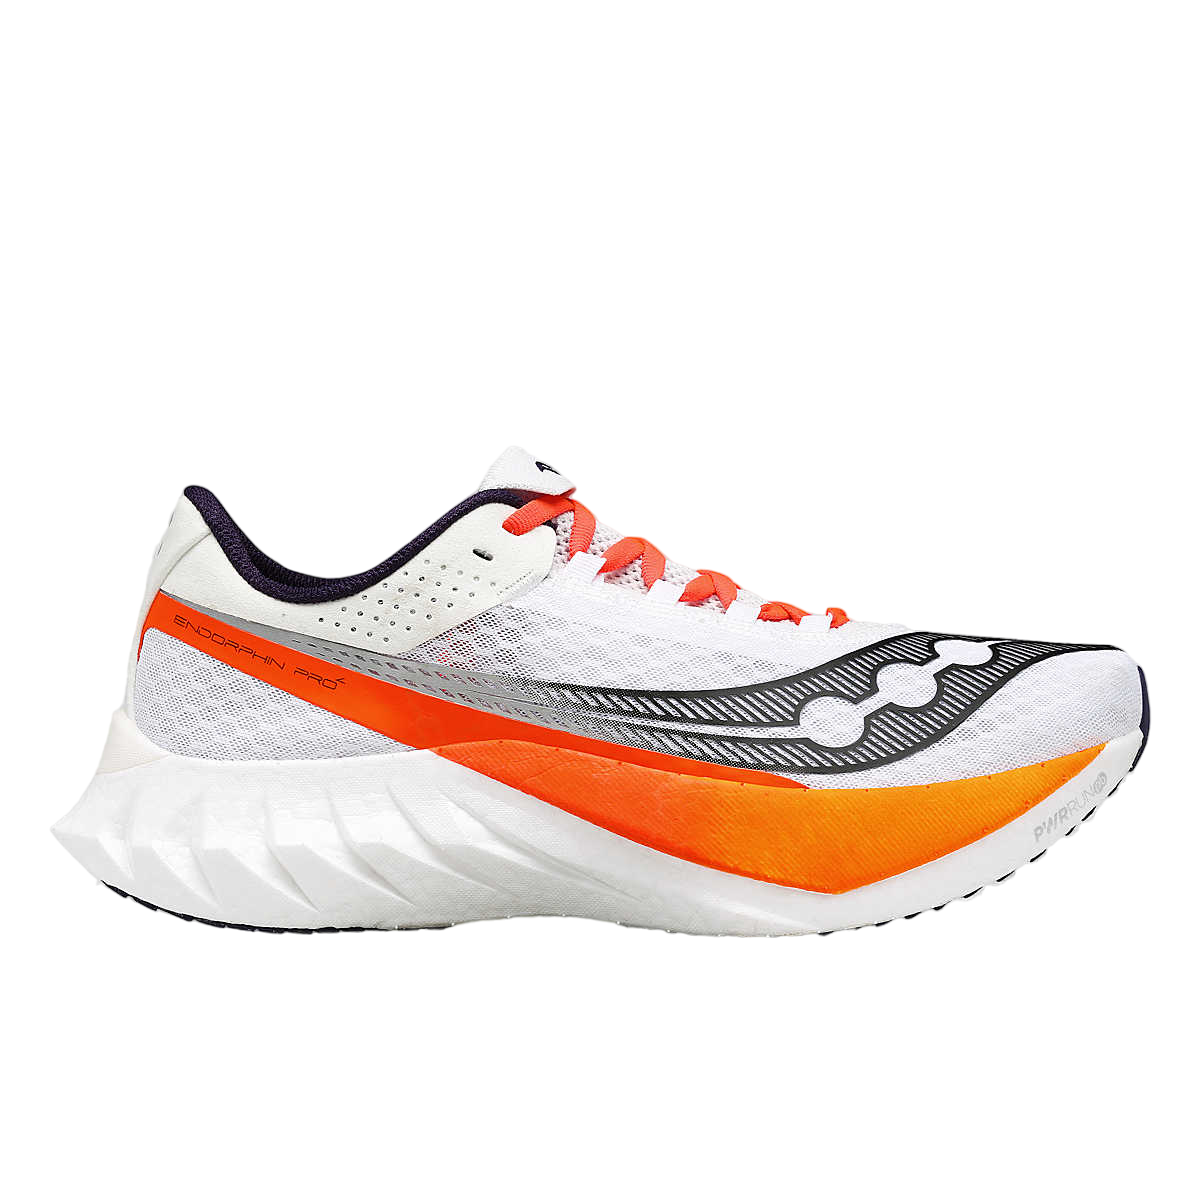 Saucony scarpa da corsa da uomo Endorphin Pro 4 S20939-129 bianco nero